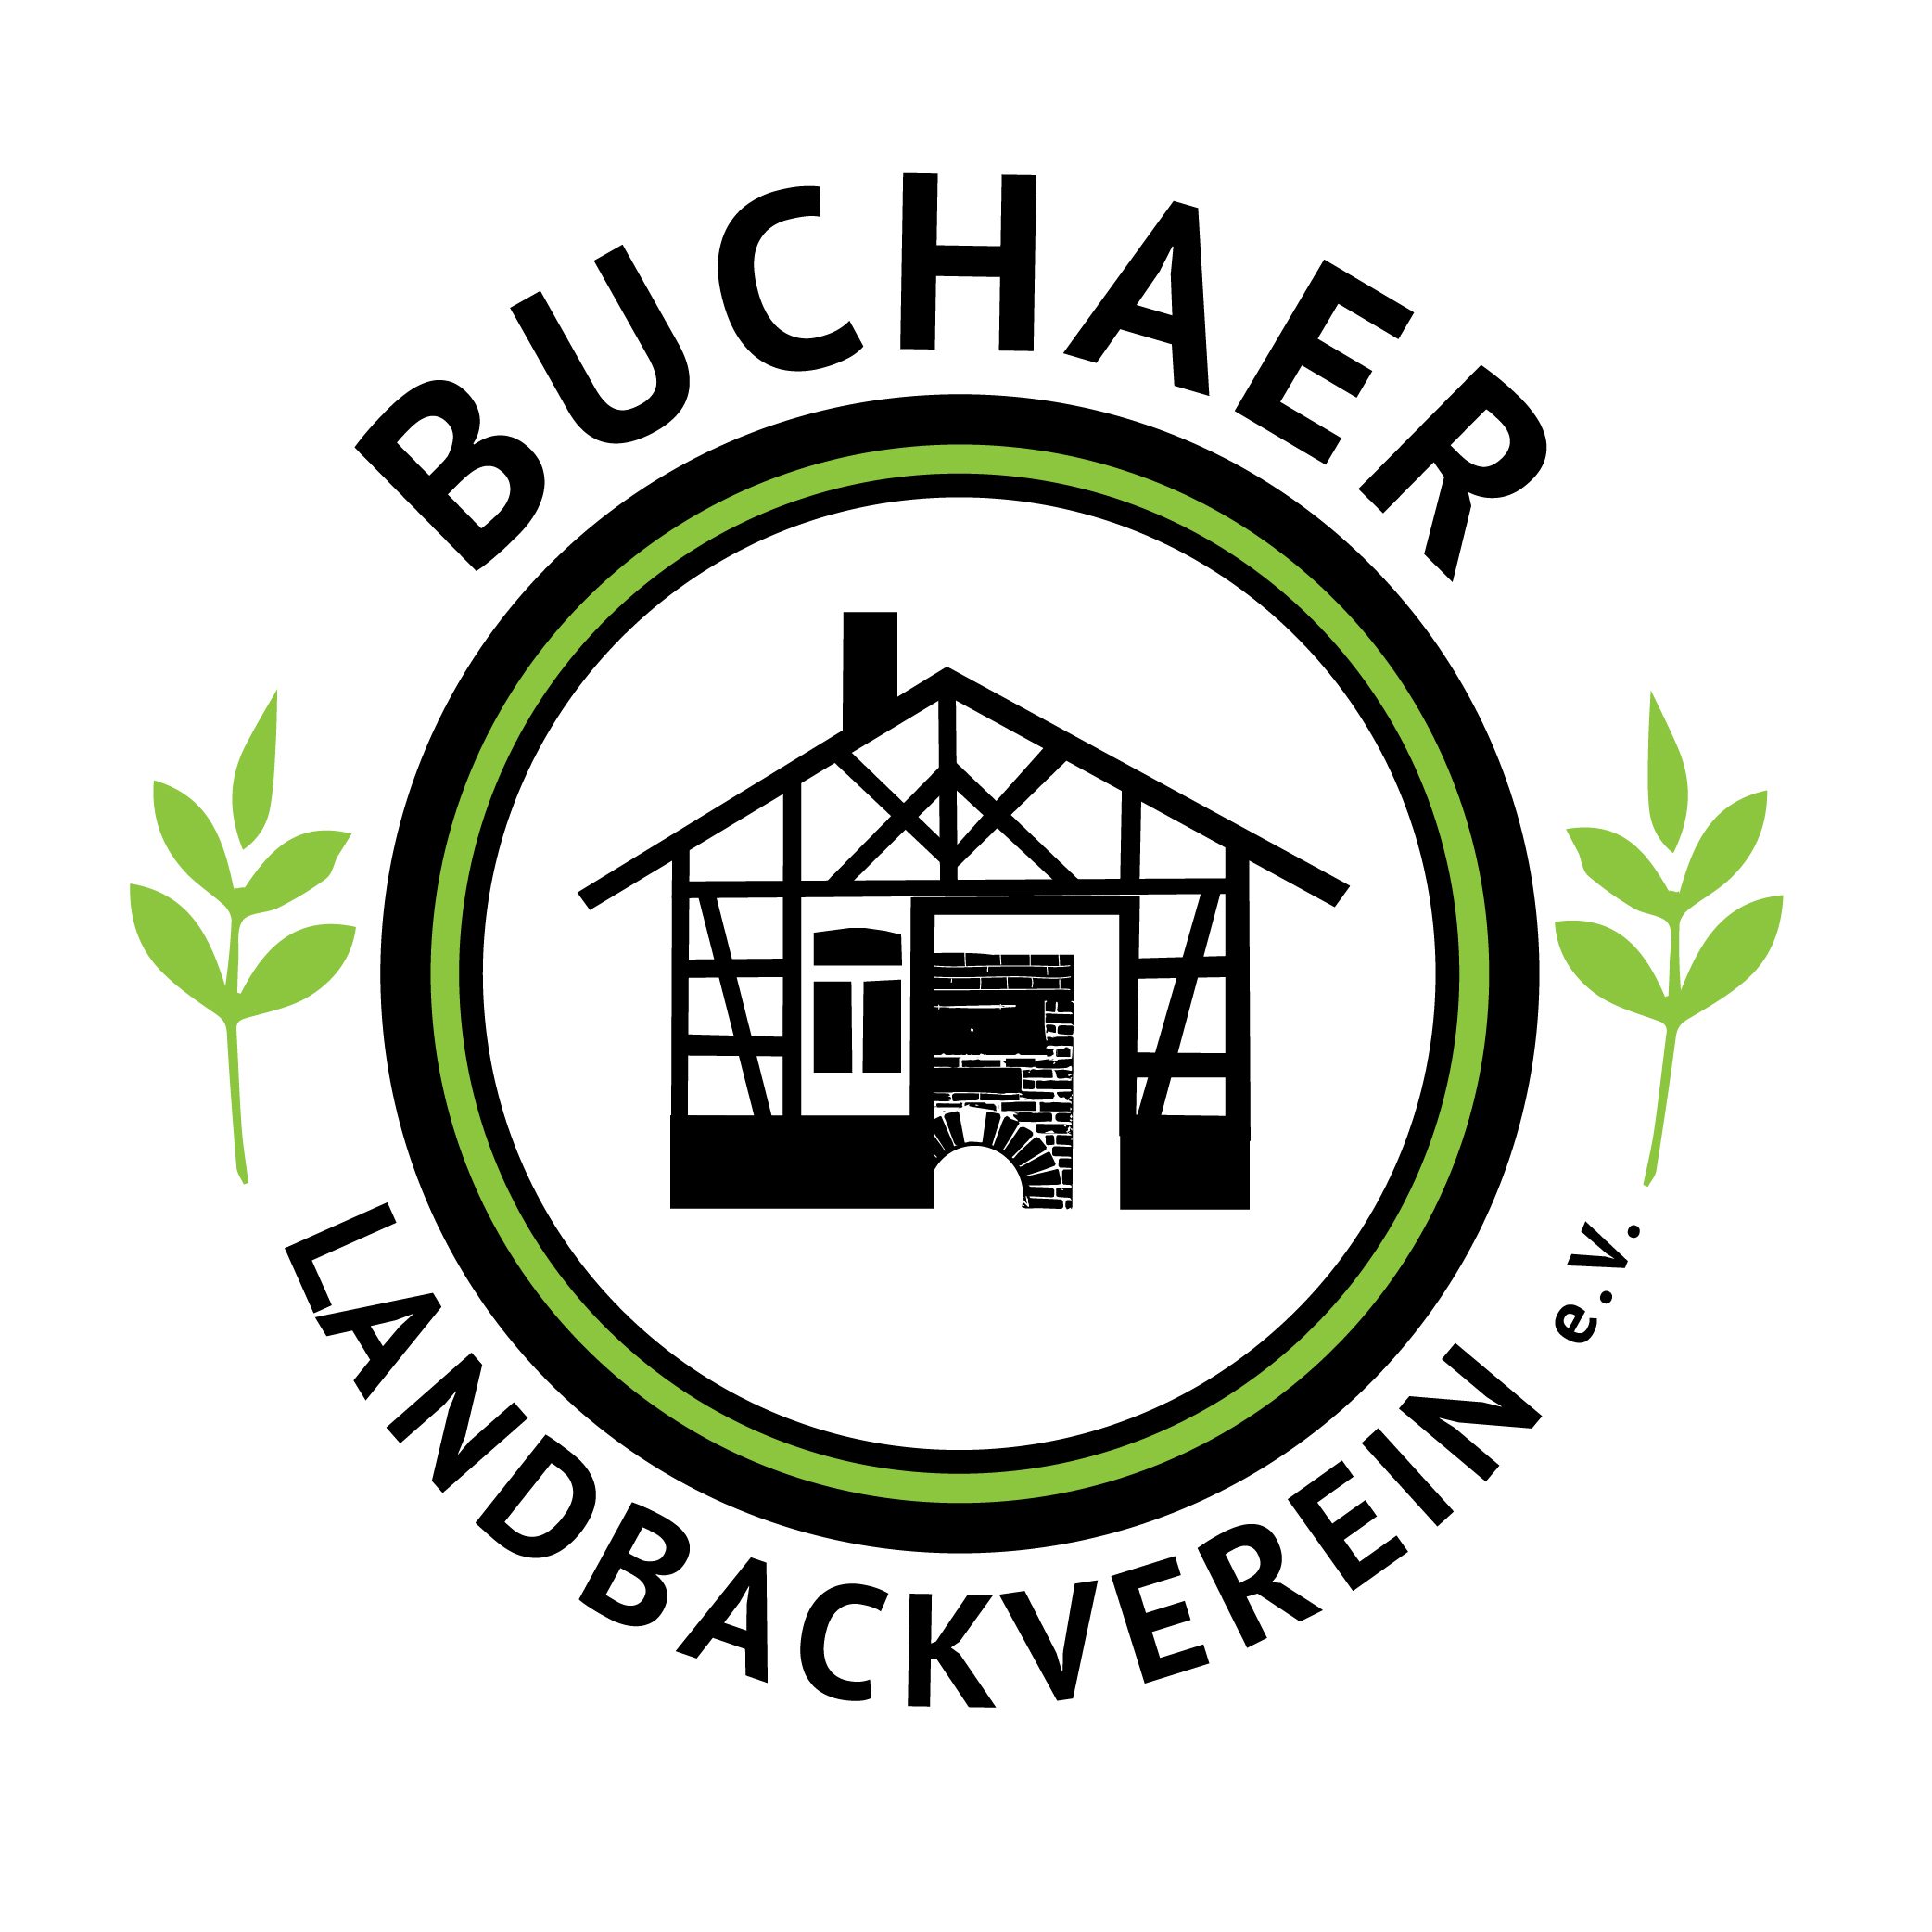 Buchaer Landbackverein e.V.